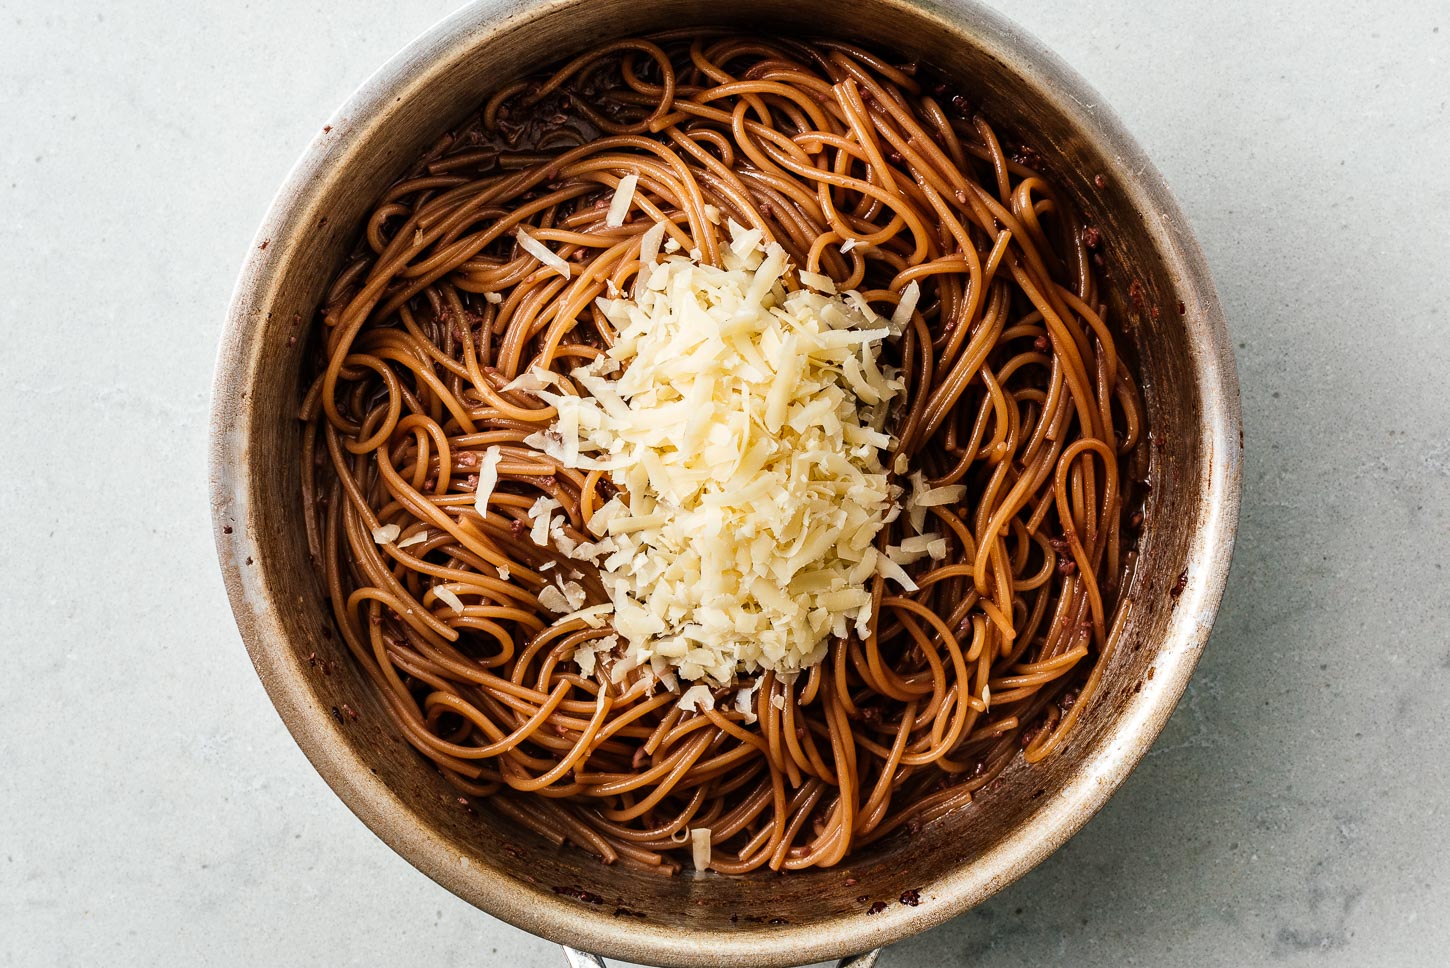 špageti u crnom vinu sa sirom | www.iamafoodblog.com